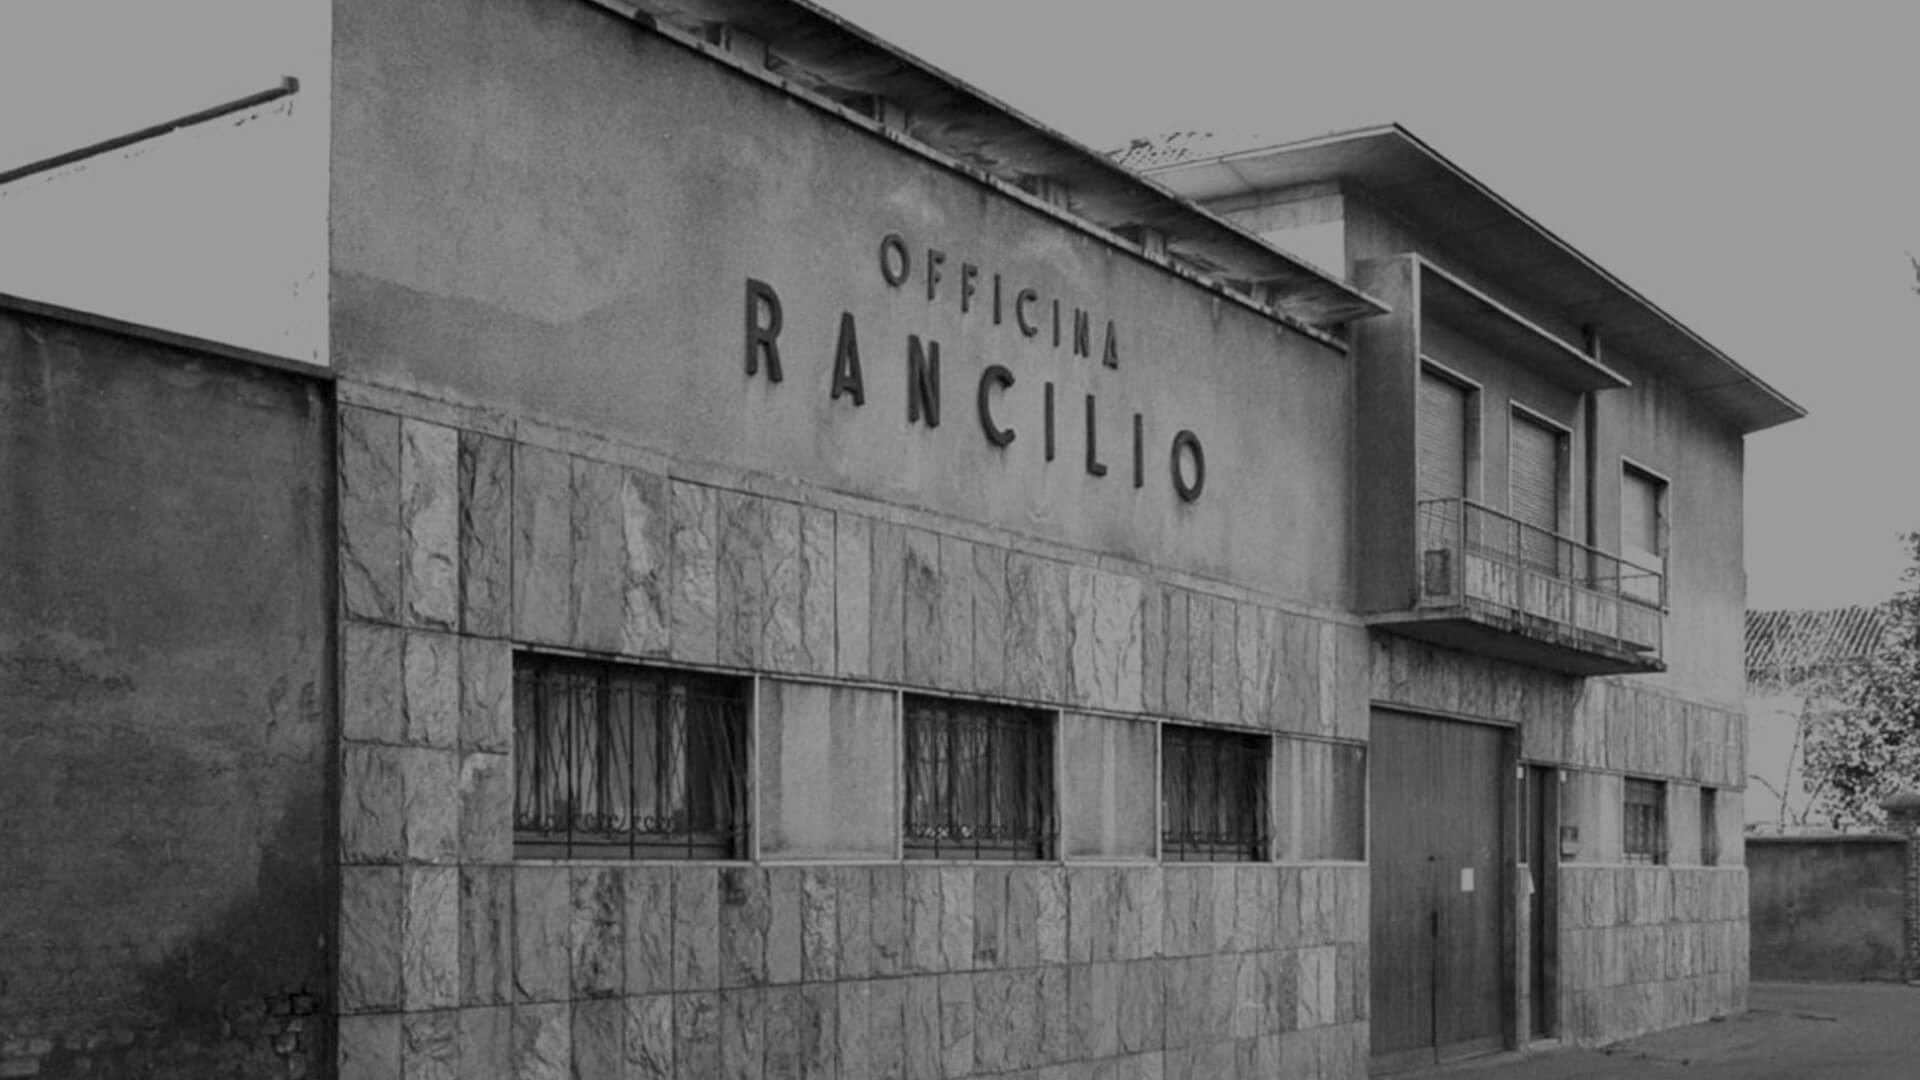 Historia Rancilio Group - desktop